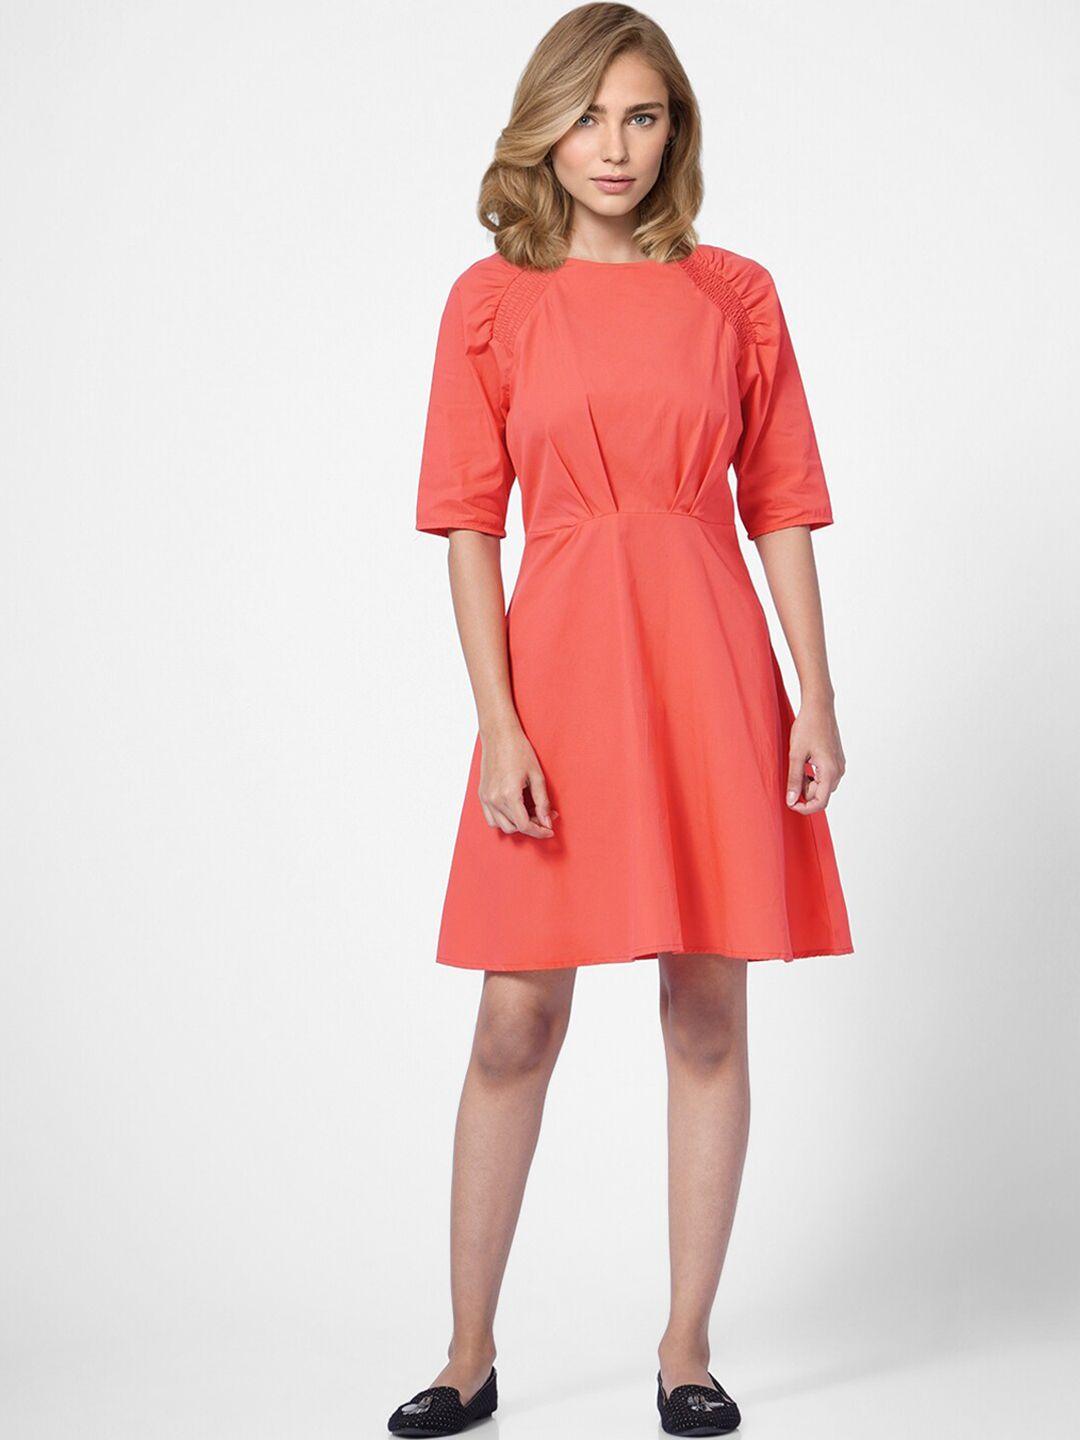 vero moda women coral solid cotton a-line dress